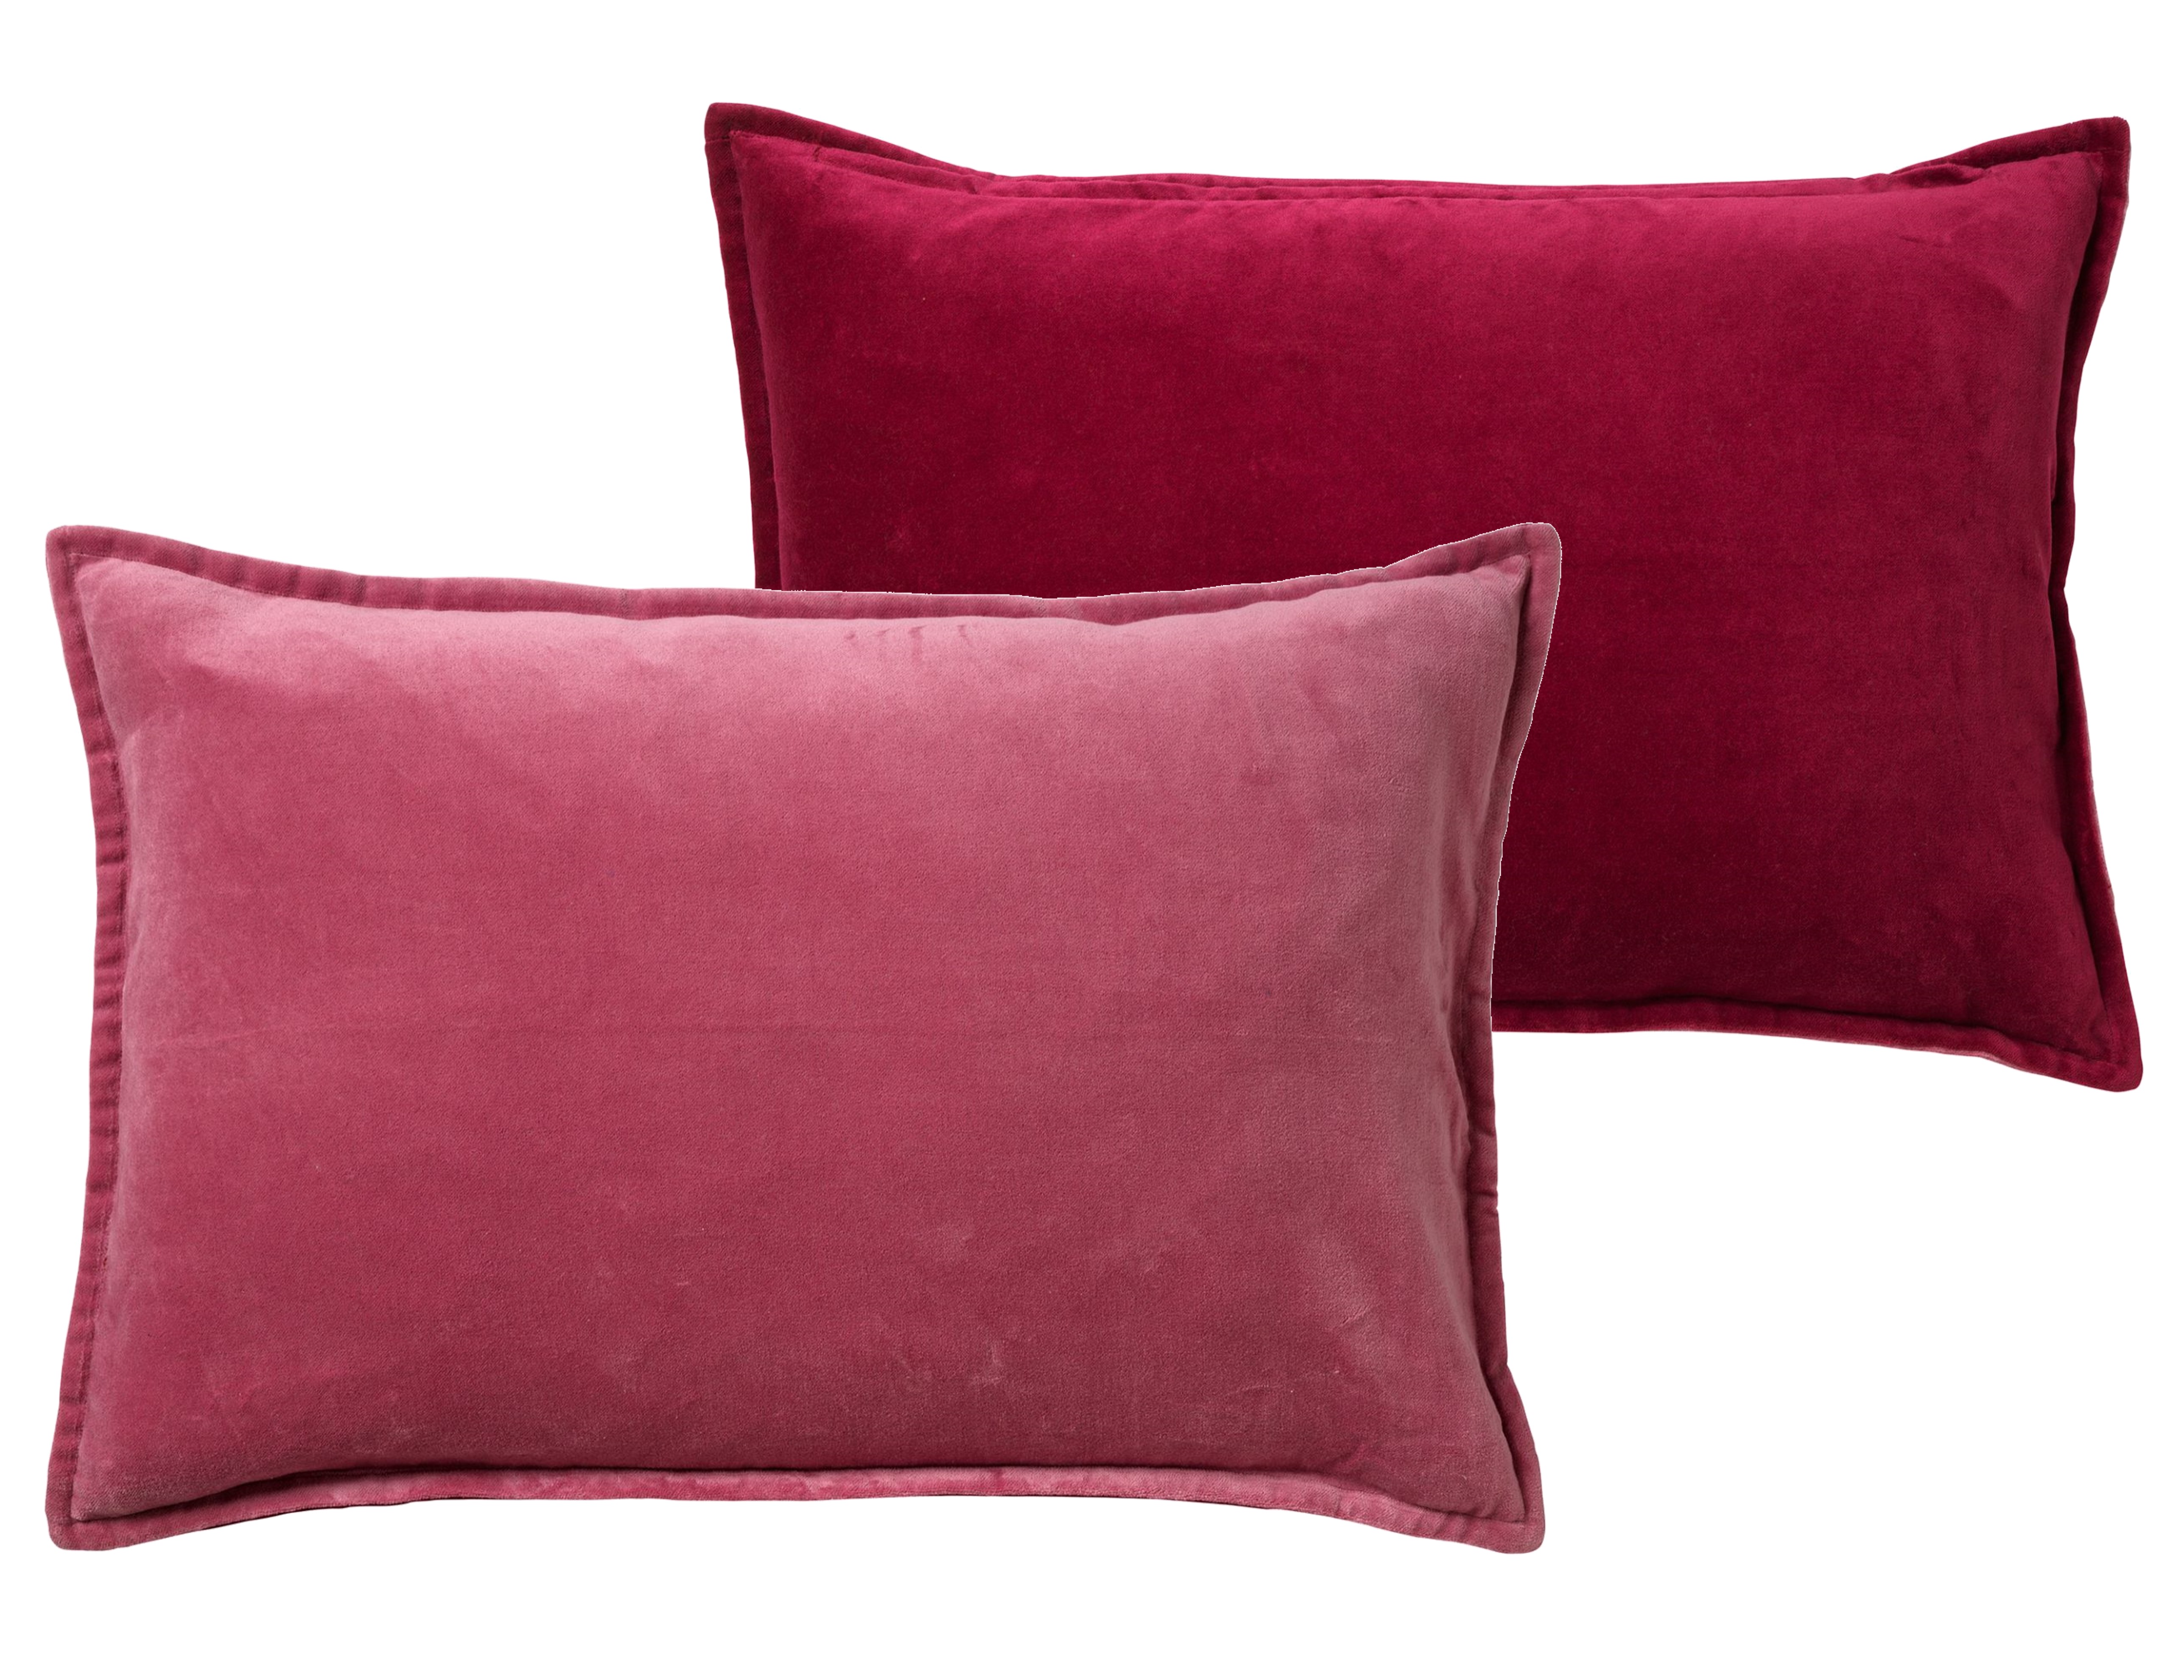 FAY - Kussenhoes 40x60 cm - velvet met 2 kleuren - Red Plum + Muted Clay - roze